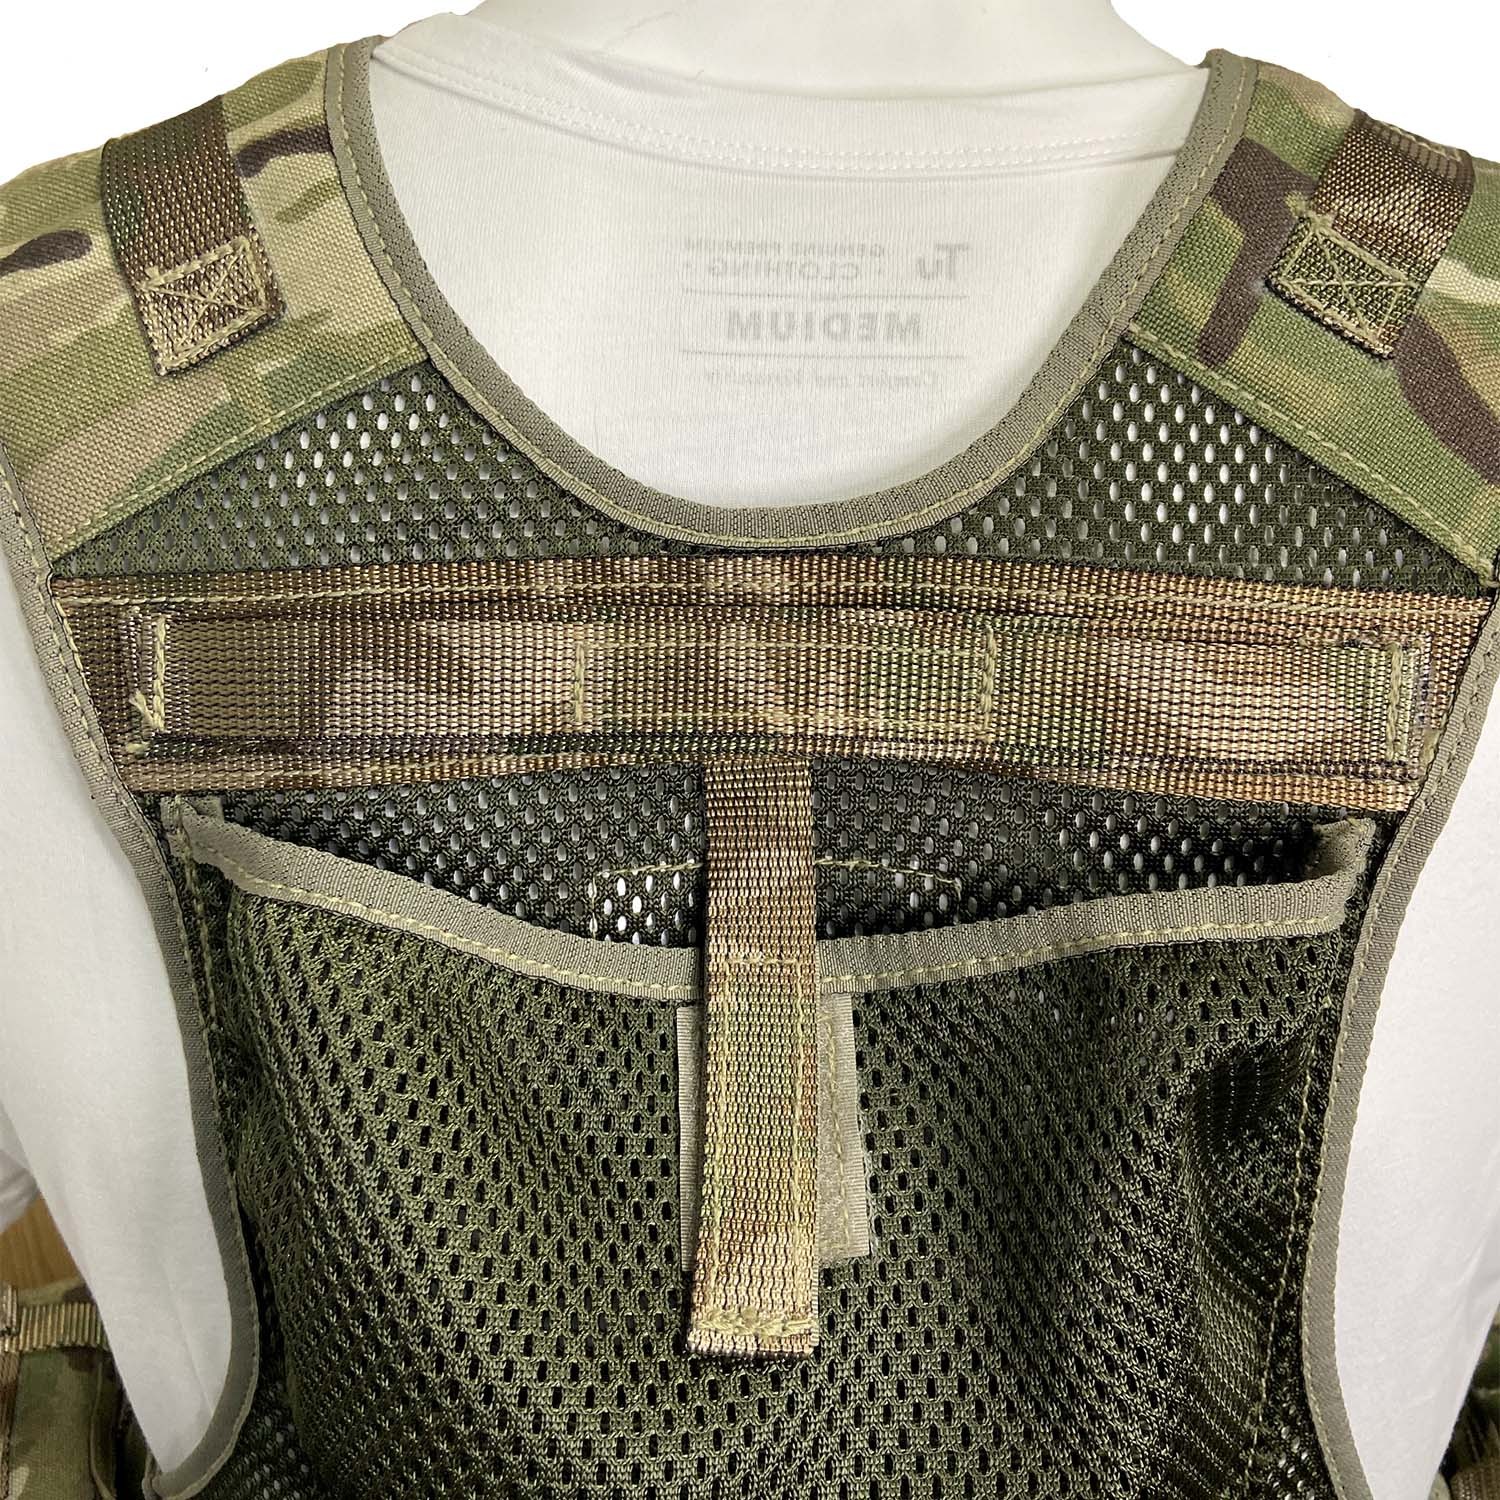 Falcon Tactical Vest